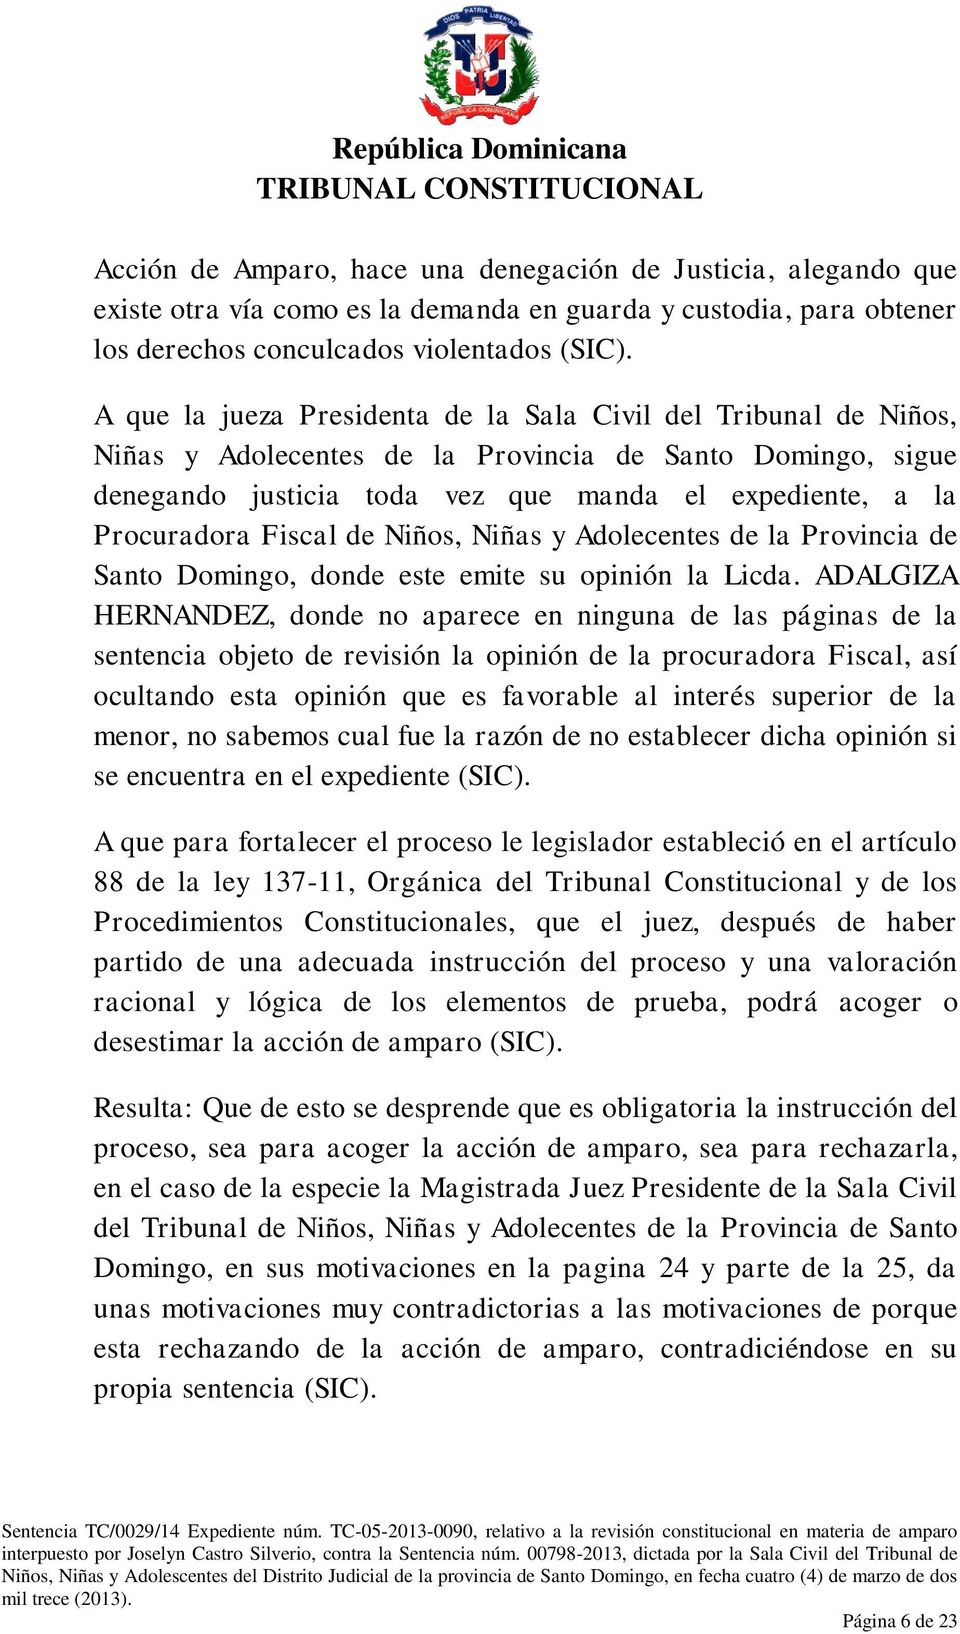 Fiscal de Niños, Niñas y Adolecentes de la Provincia de Santo Domingo, donde este emite su opinión la Licda.